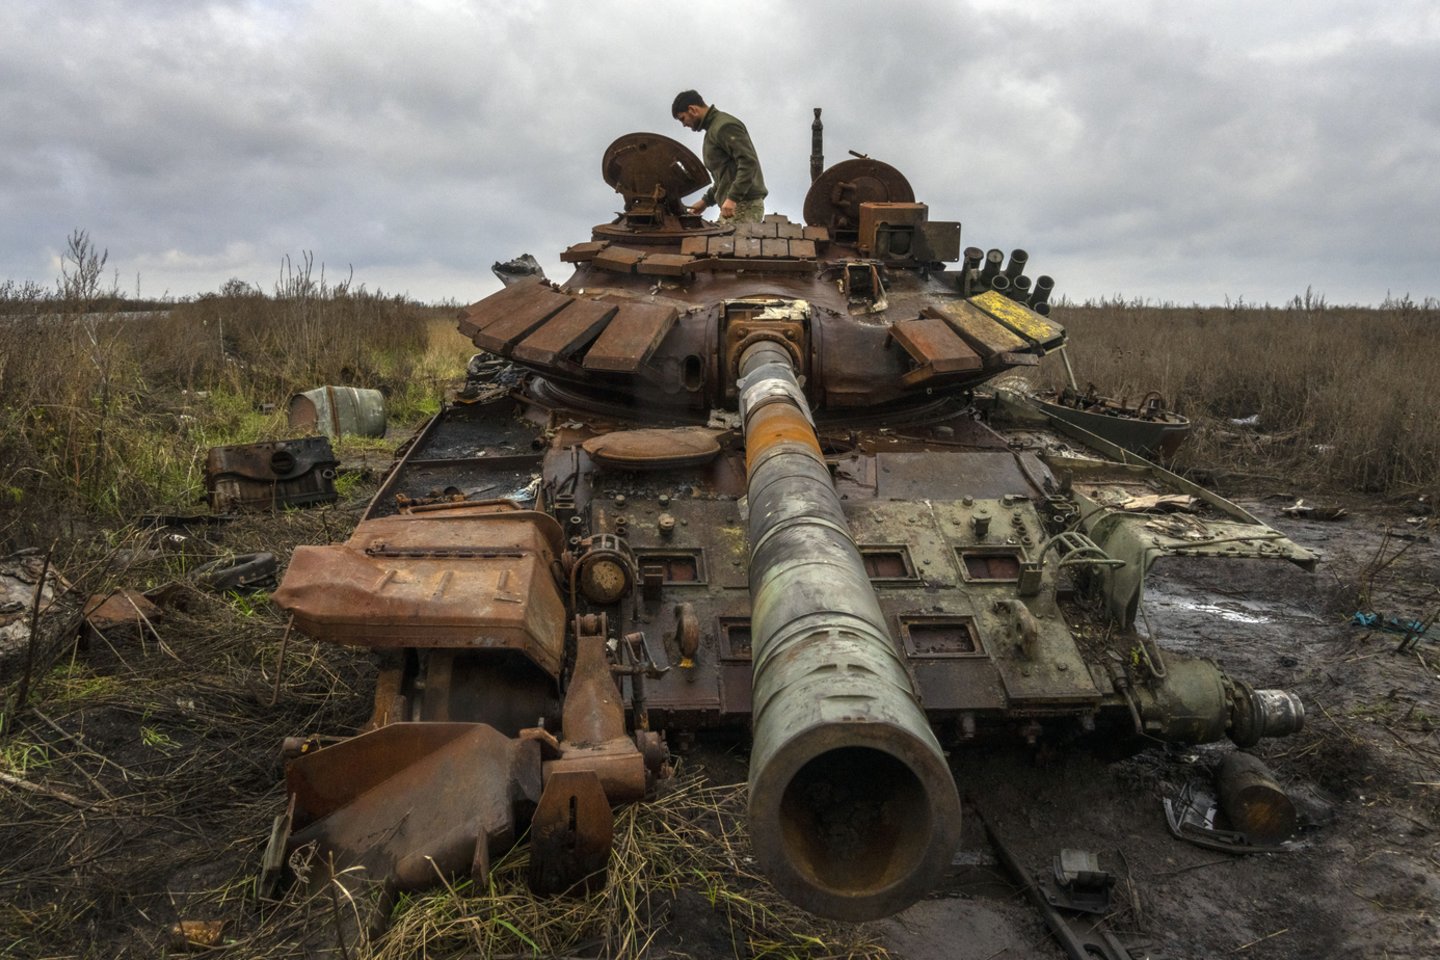  Atvirųjų šaltinių žvalgybos svetainė „Oryx“, renkanti nuotraukas ir vaizdo įrašus apie materialinius nuostolius abiejose konflikto pusėse, praneša, kad šiuo metu vizualiai patvirtinta, jog Ukrainoje sunaikinta 1000 Rusijos tankų.<br> AP / Scanpix nuotr.